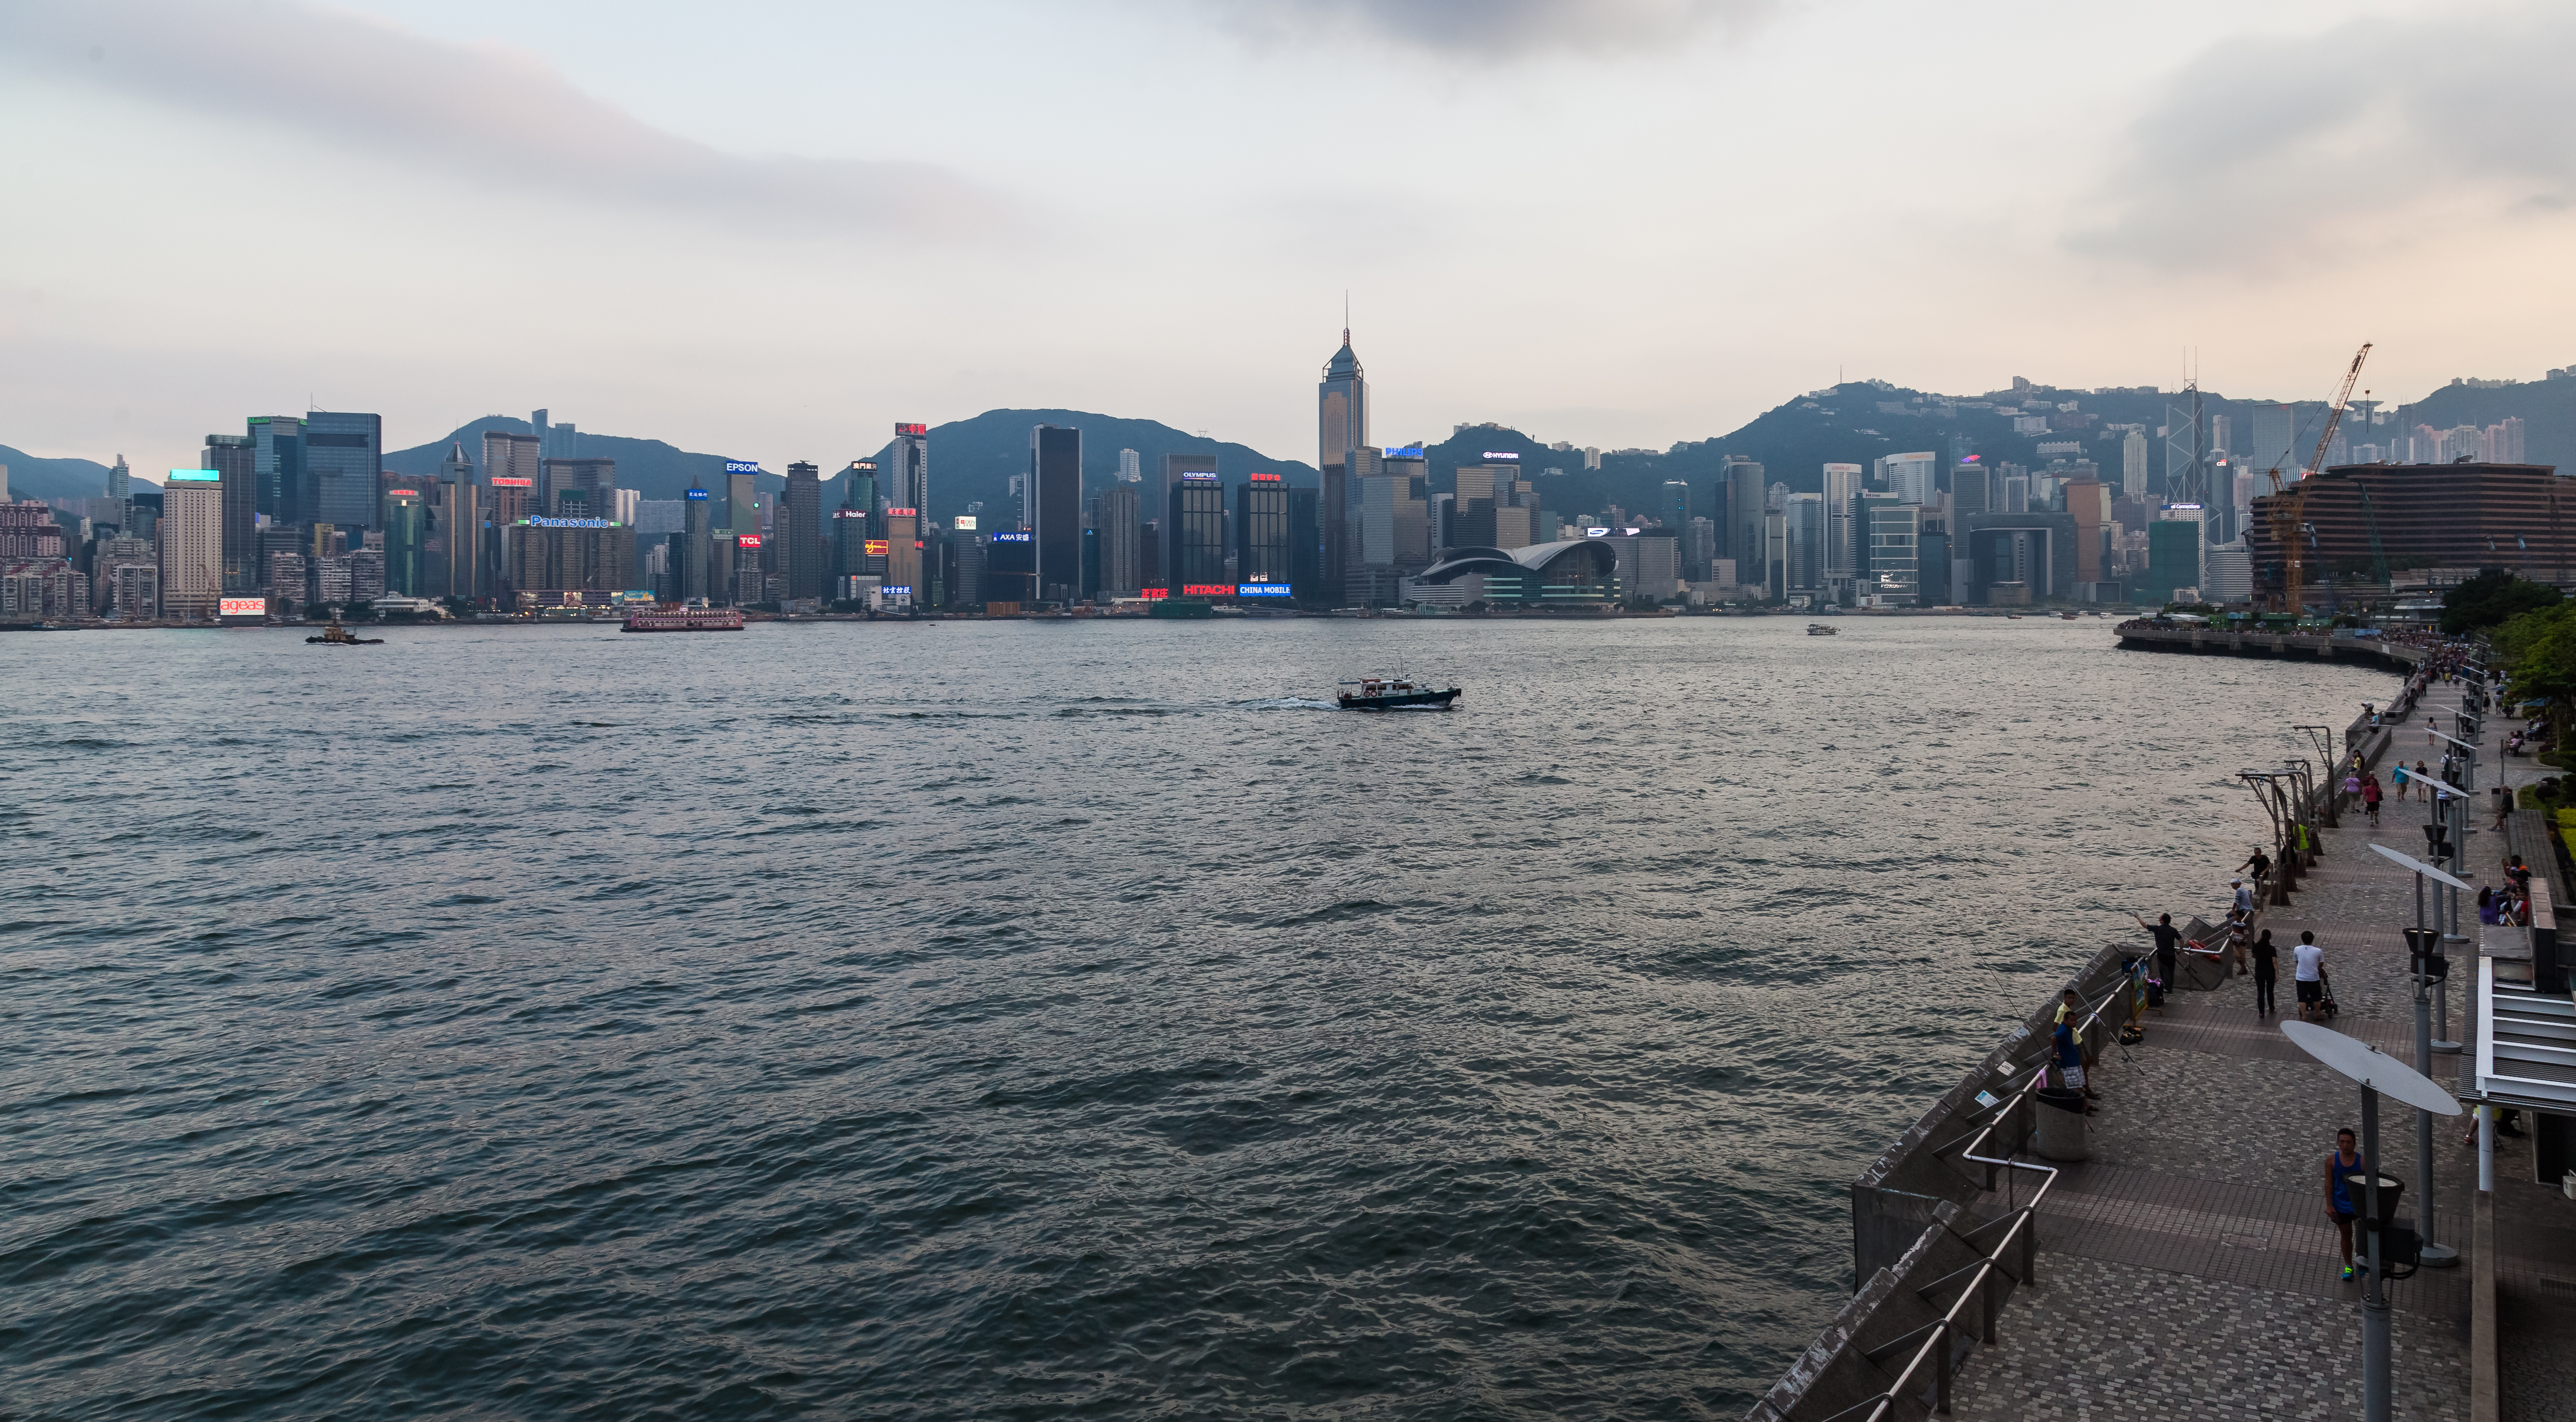 Vista del Puerto de Victoria desde Kowloon, Hong Kong, 2013-08-11, DD 01